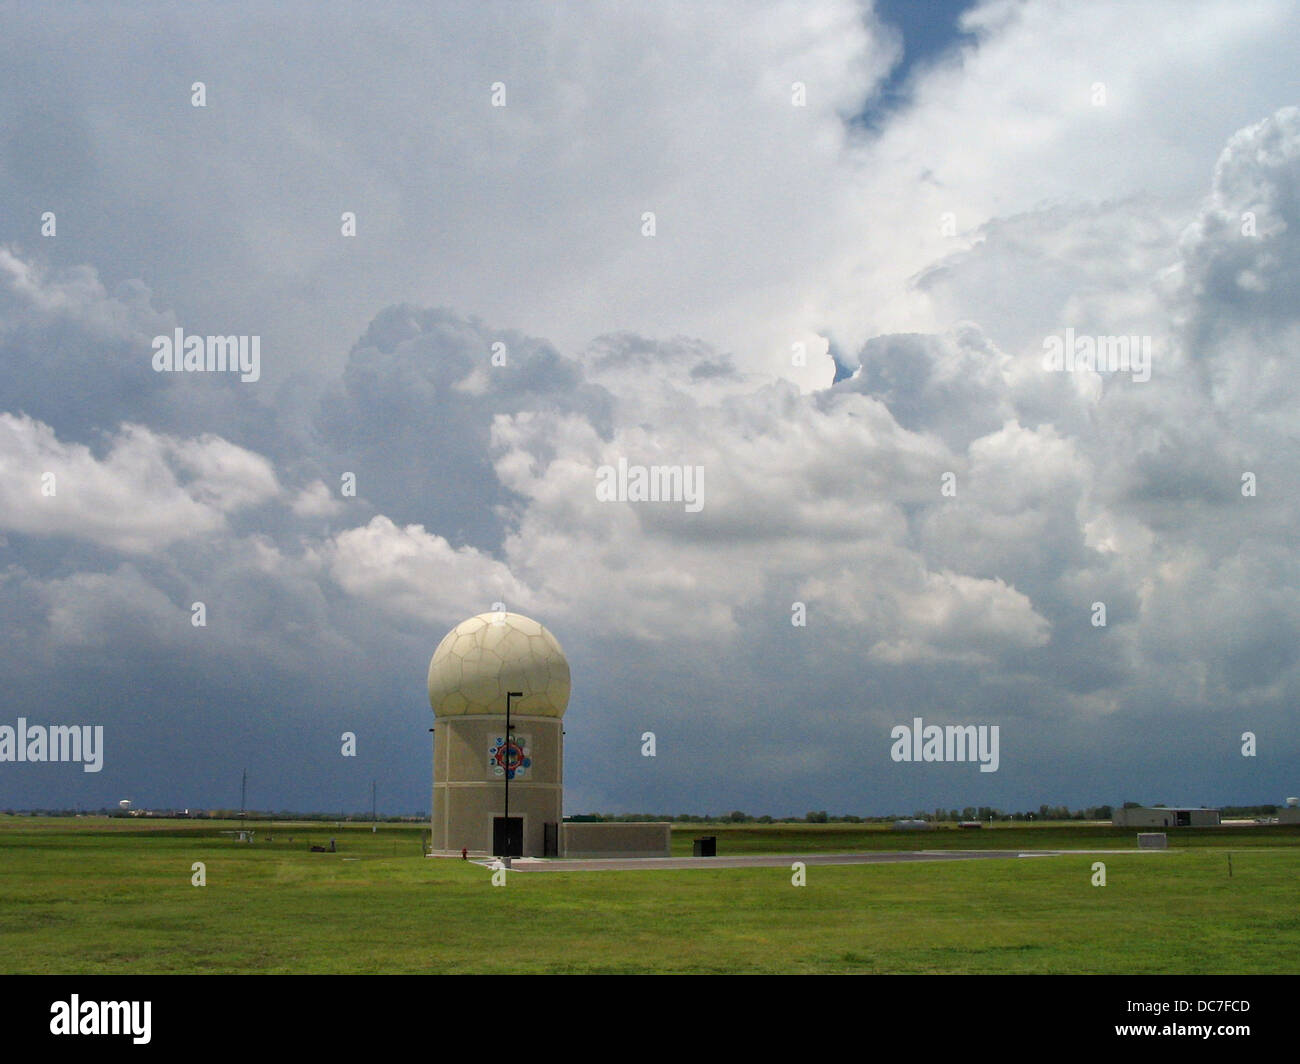 Ein Multi Funktion Phased-Array doppler Wetter Radarturm 1. Juni 2006 in Norman, Oklahoma. Das Phased-Array-System kann Flugzeuge Tracking, Profilierung von Wind und Wetter Überwachung mit einem Turm gleichzeitig ausführen. Stockfoto